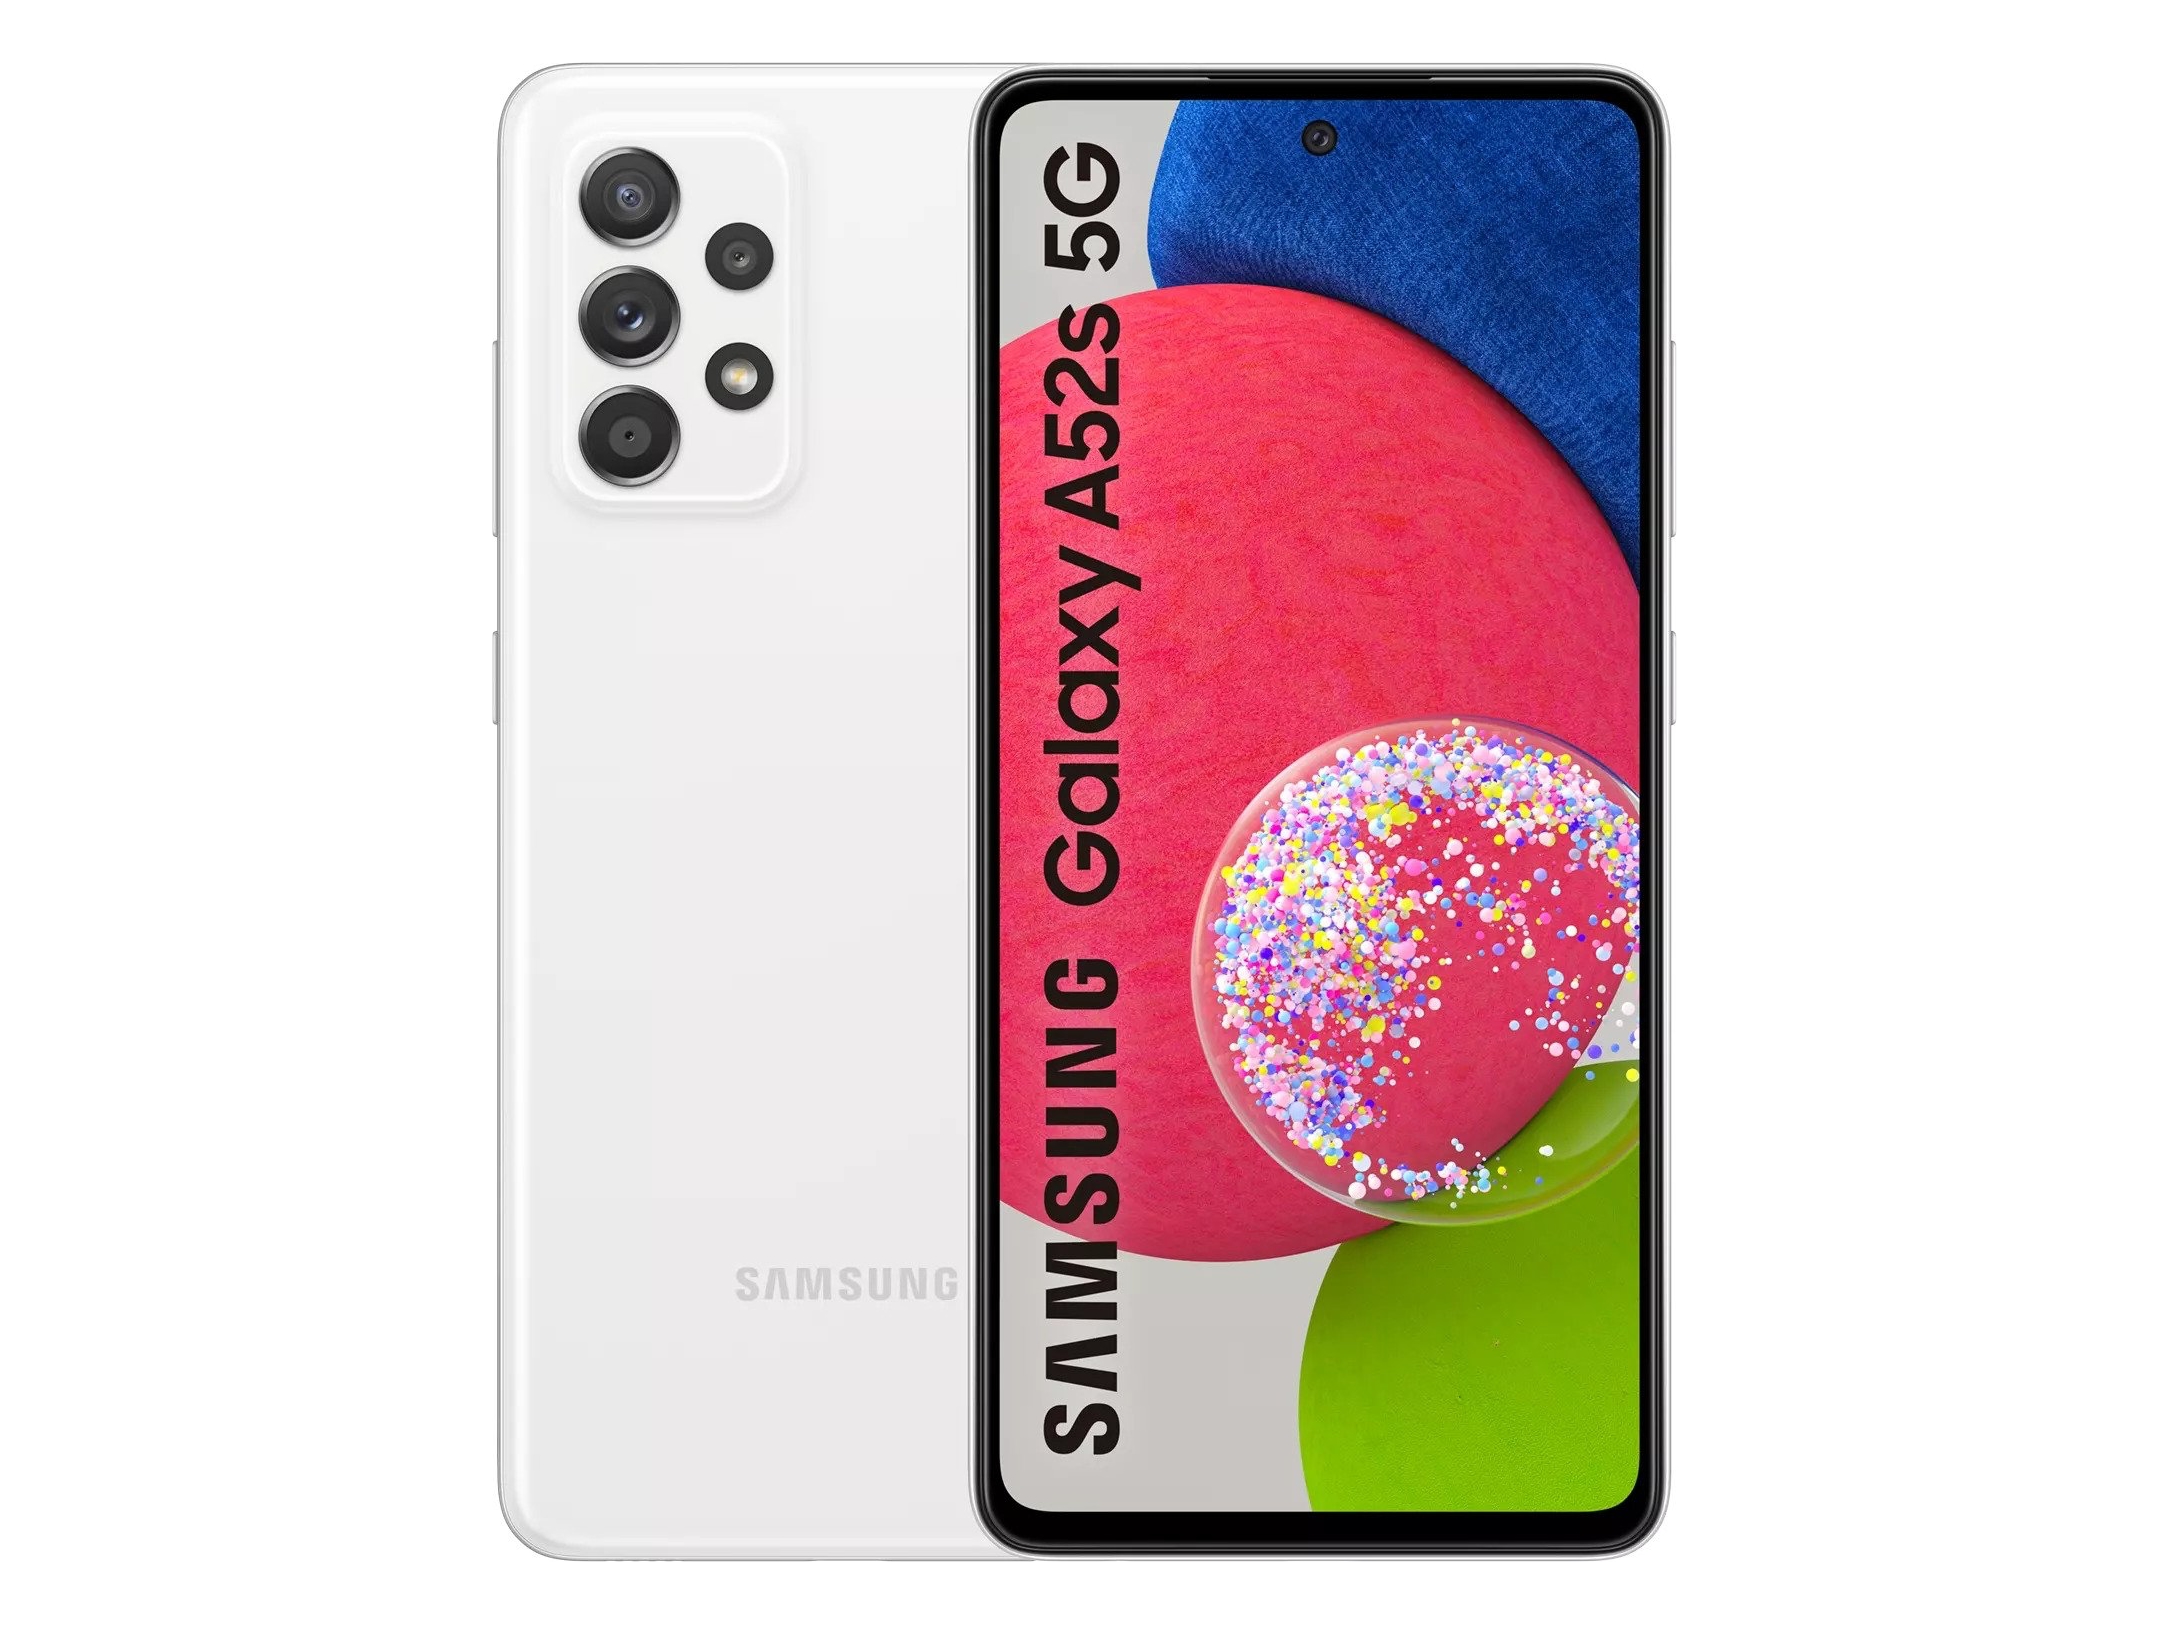 Szczegółowa specyfikacja, cena i jakość zdjęć smartfona Samsung Galaxy A52s wyciekły do sieci